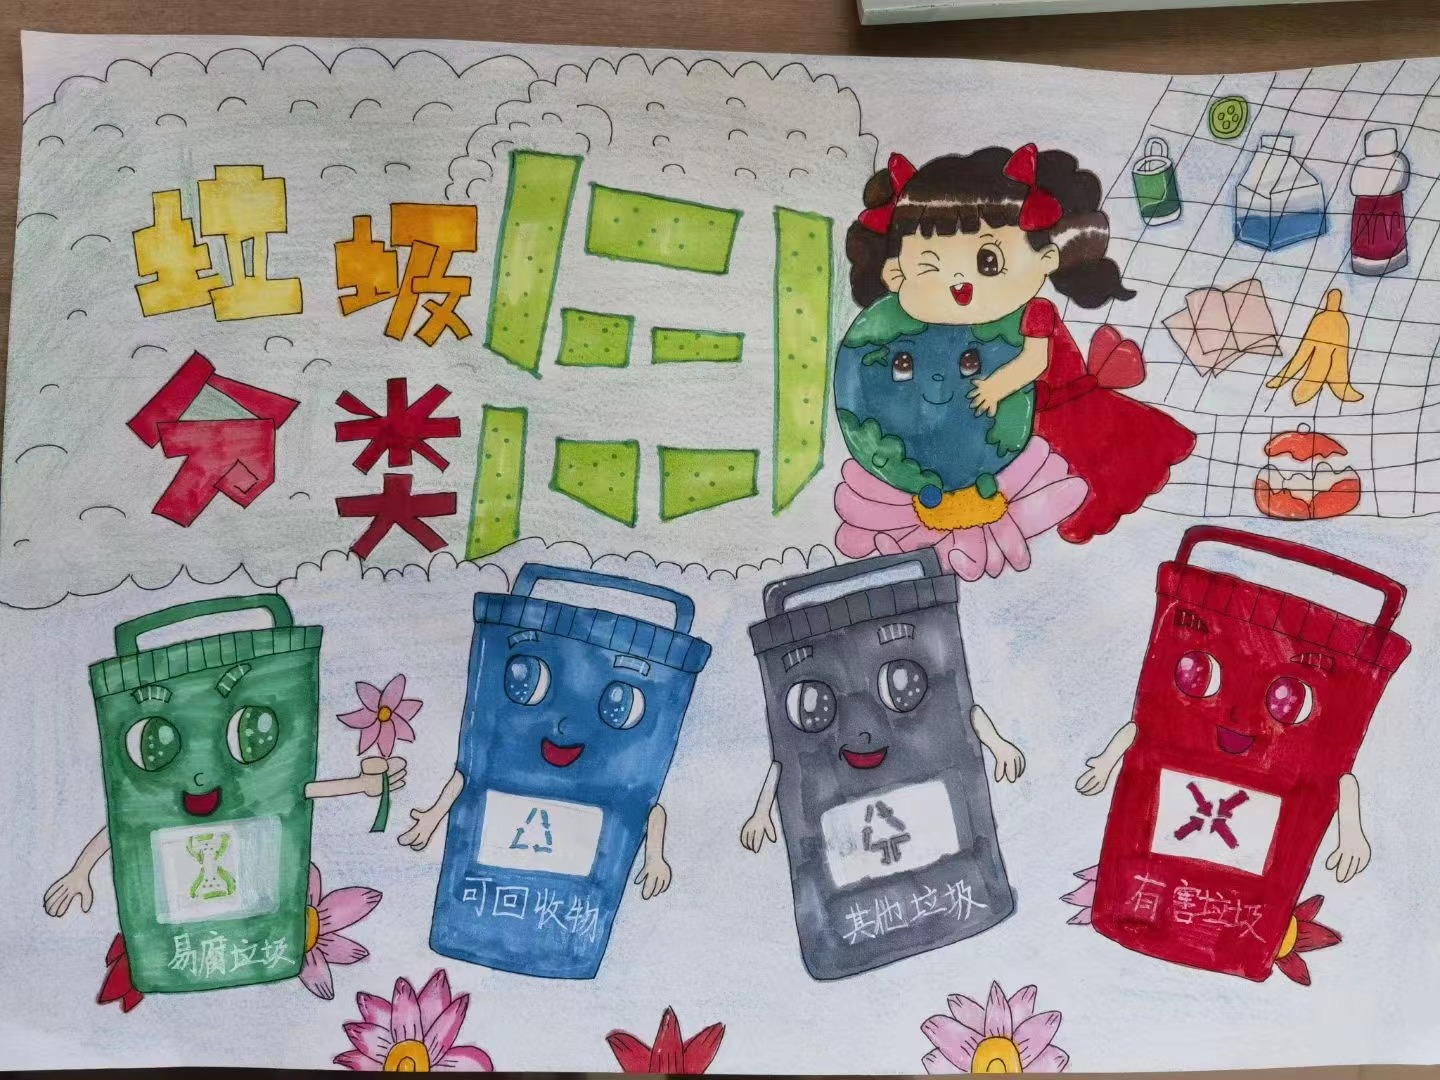 此次垃圾分类创意绘画活动向同学们倡导了节约,环保,低碳的生活理念